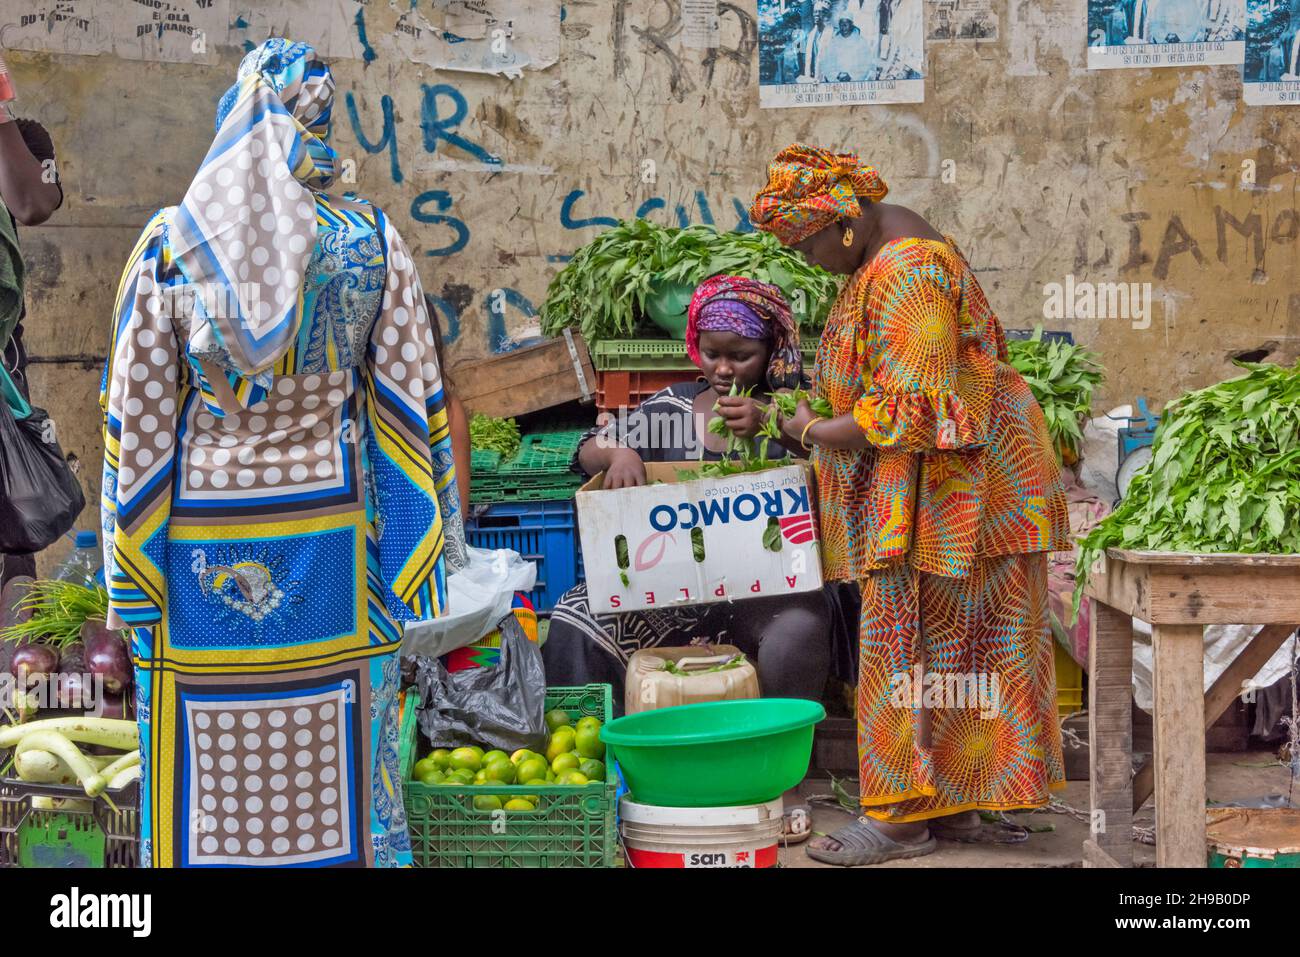 Vente de fruits et légumes au marché de Tilen, Dakar, Sénégal Banque D'Images